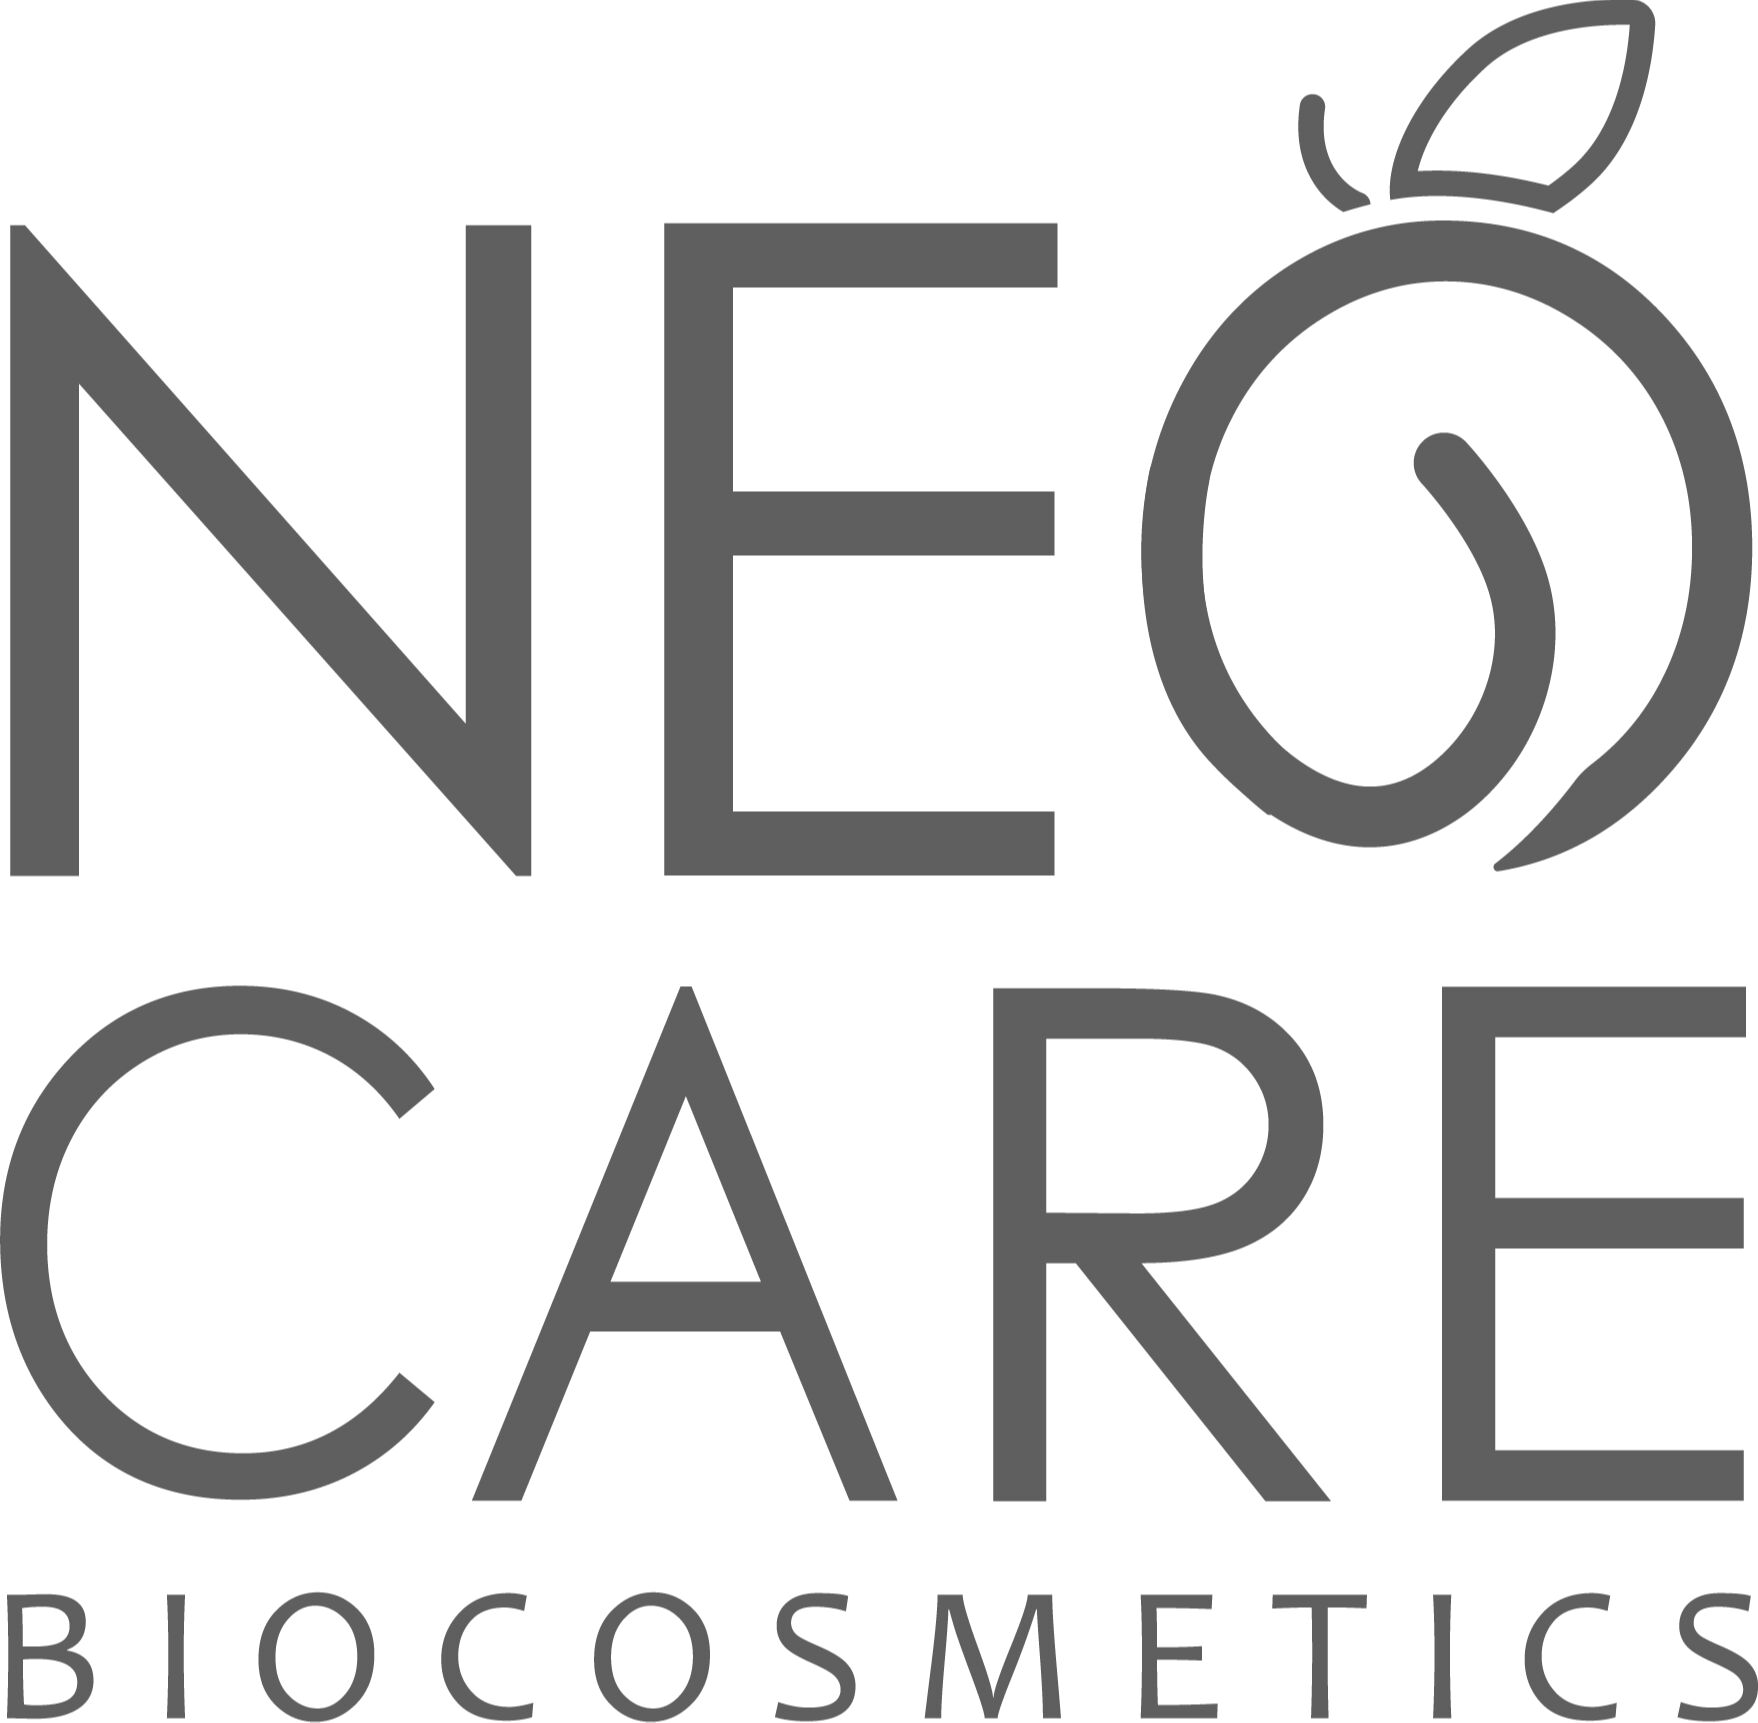 Neo Care